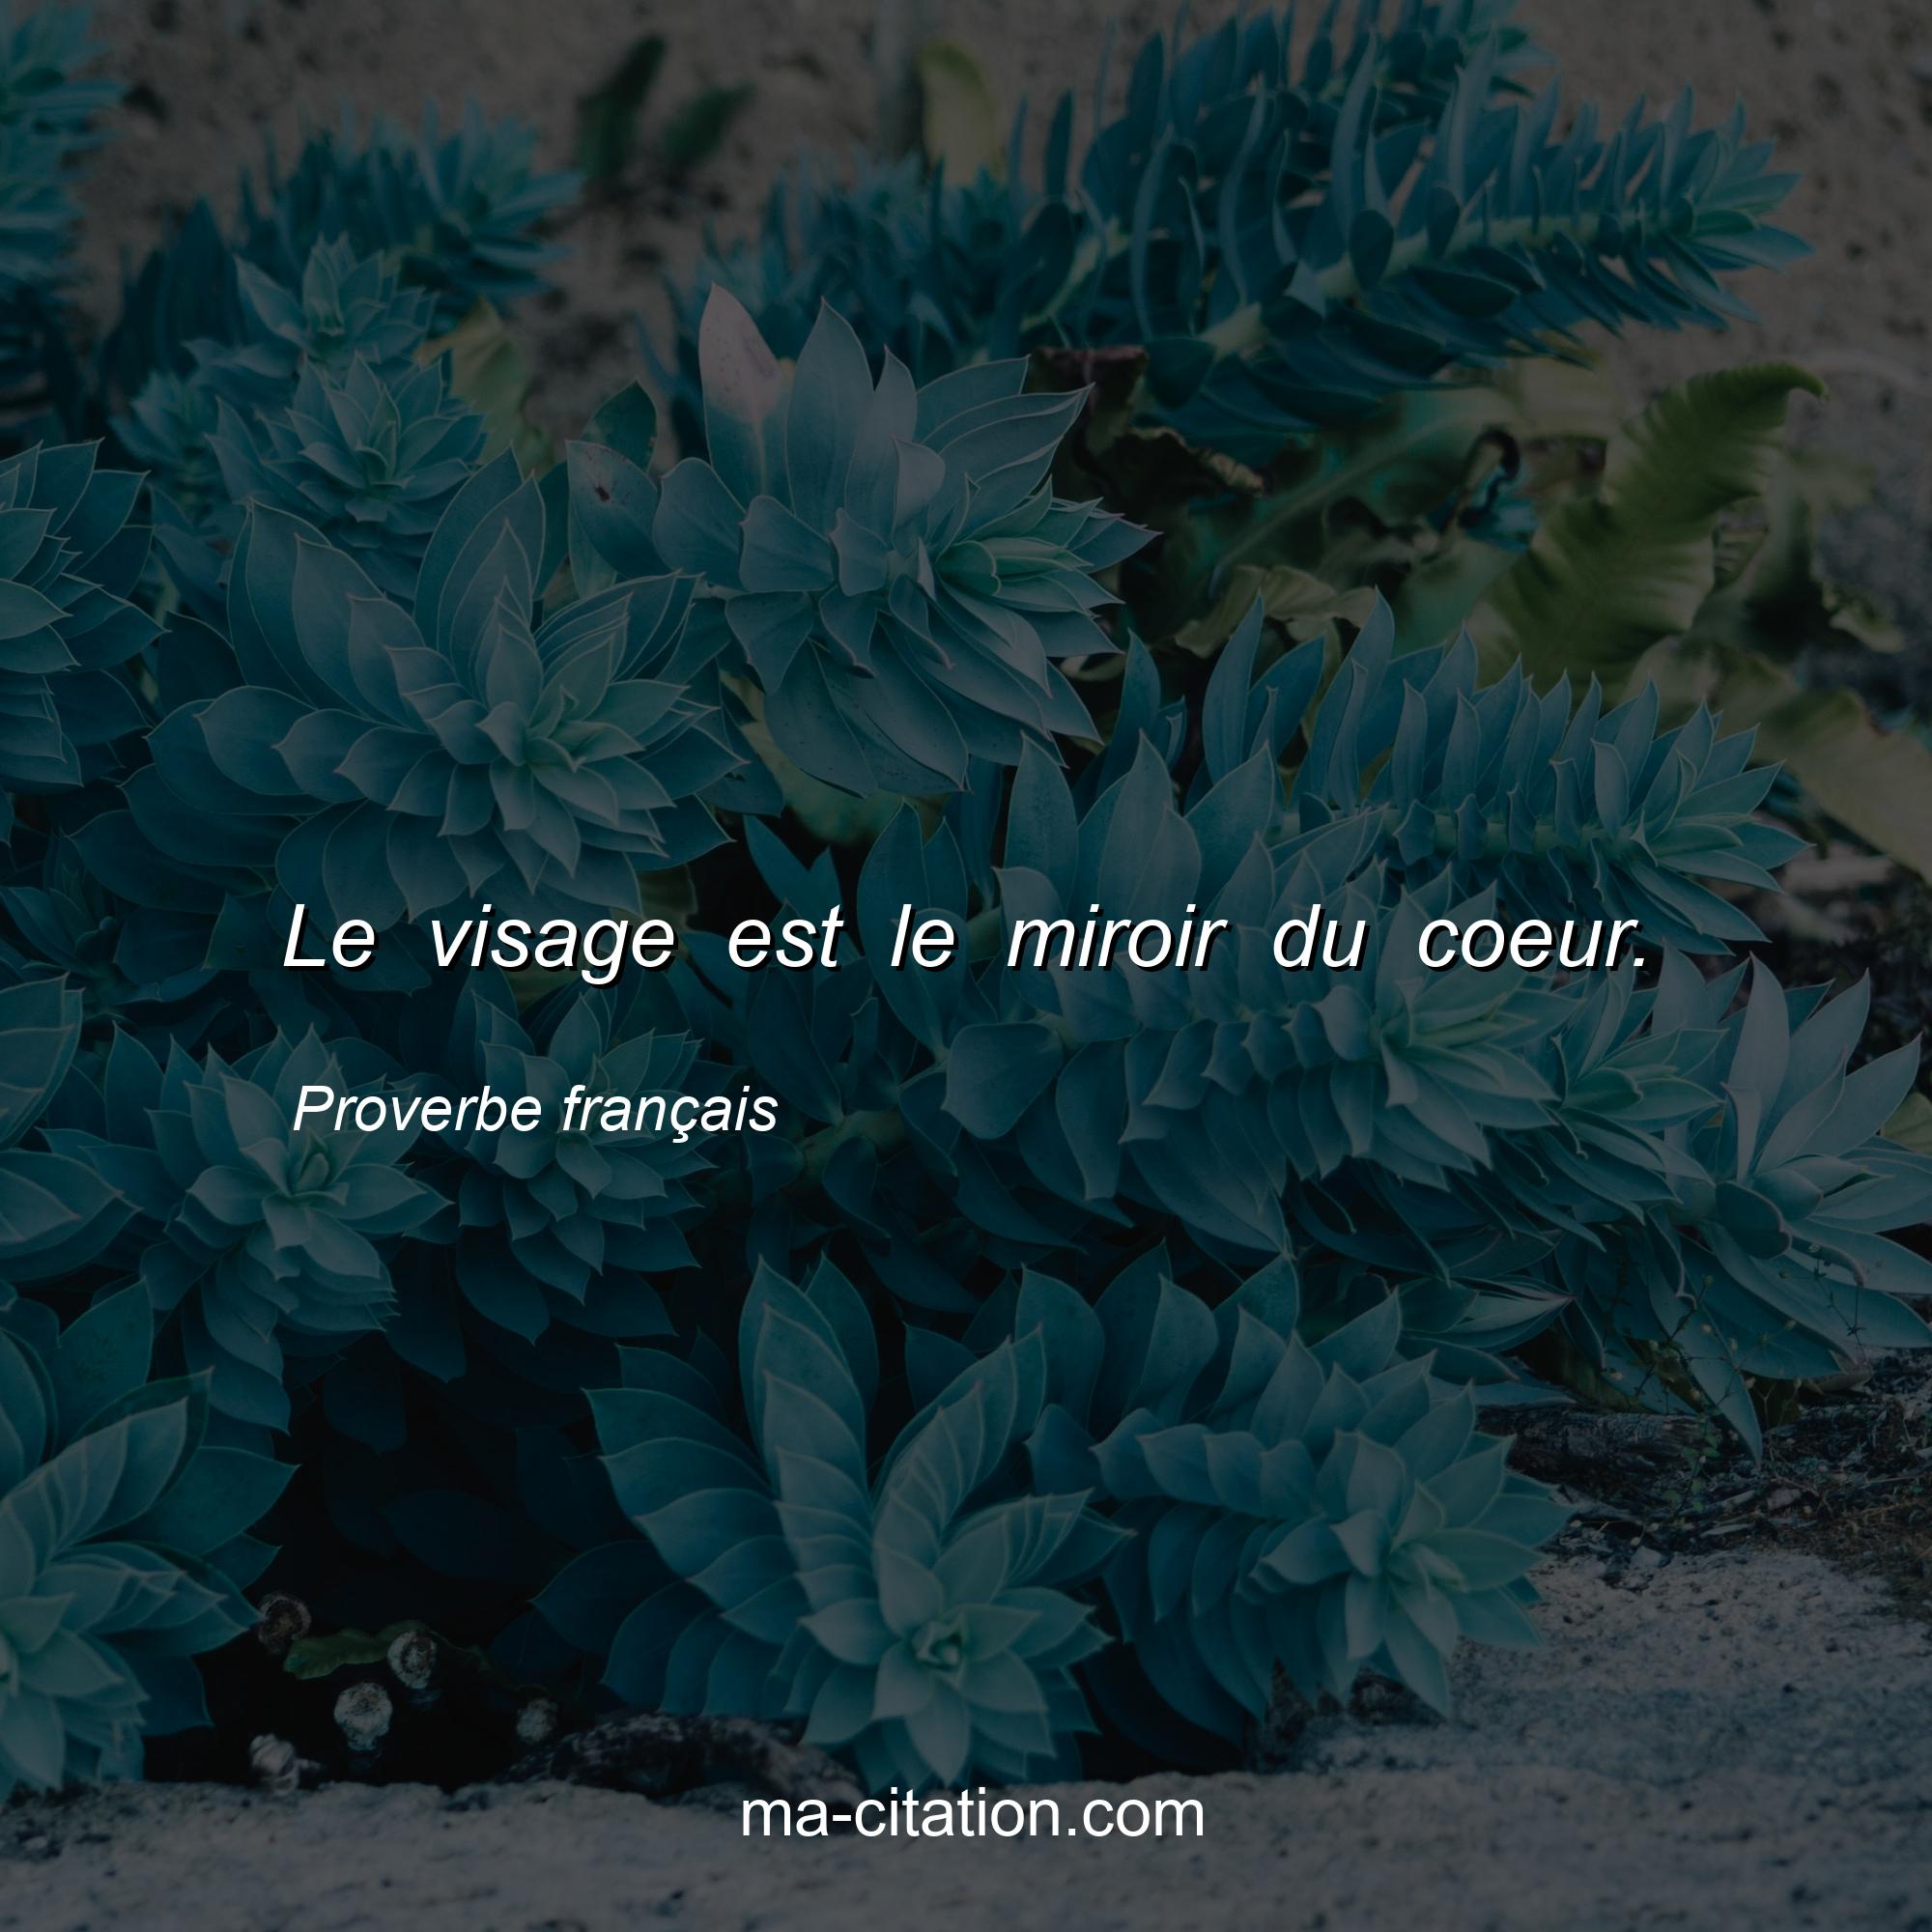 Proverbe français : Le visage est le miroir du coeur.